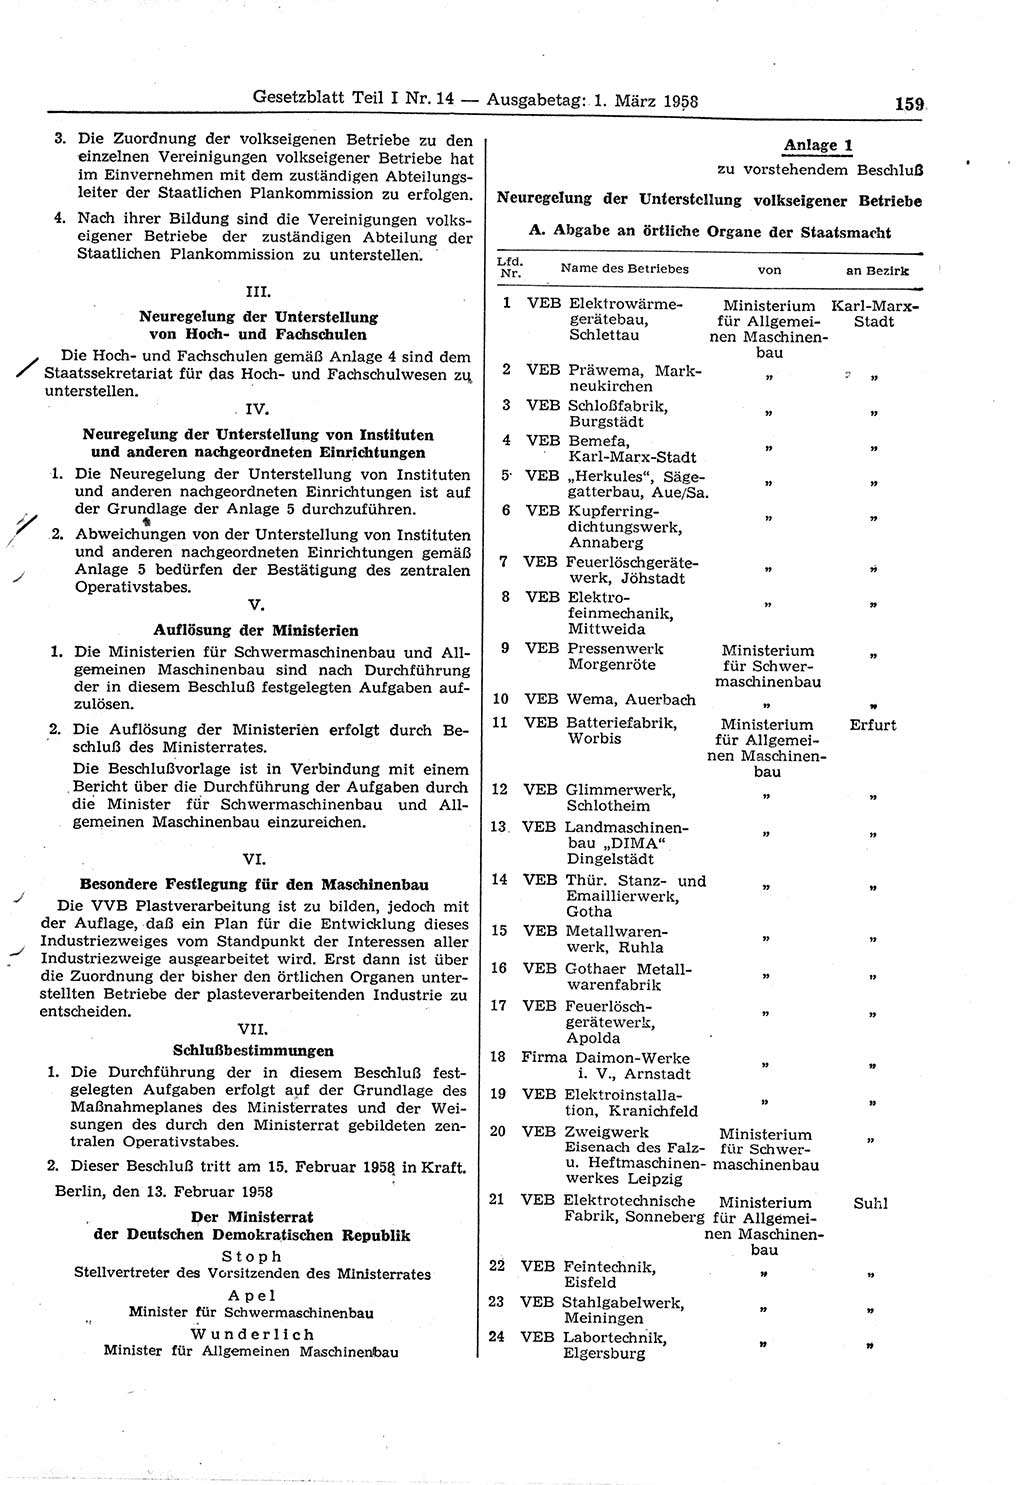 Gesetzblatt (GBl.) der Deutschen Demokratischen Republik (DDR) Teil Ⅰ 1958, Seite 159 (GBl. DDR Ⅰ 1958, S. 159)